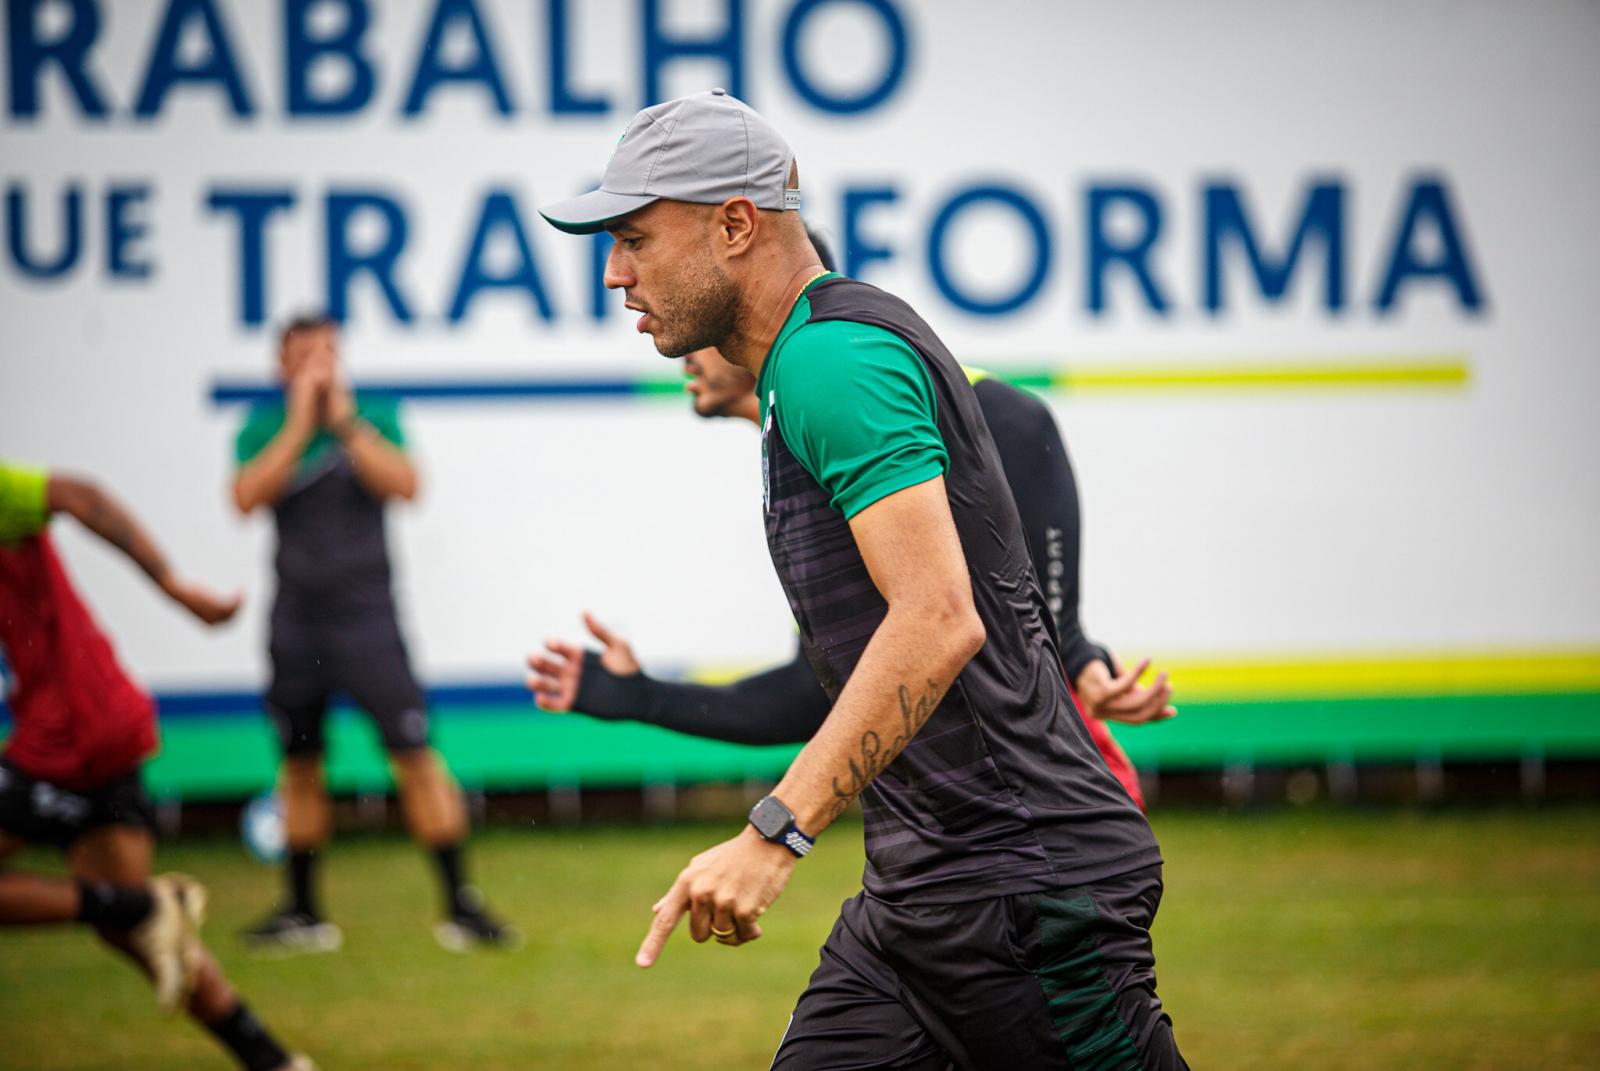 Serviço de Jogo: Manaus FC recebe o Remo em duelo regional na Série C